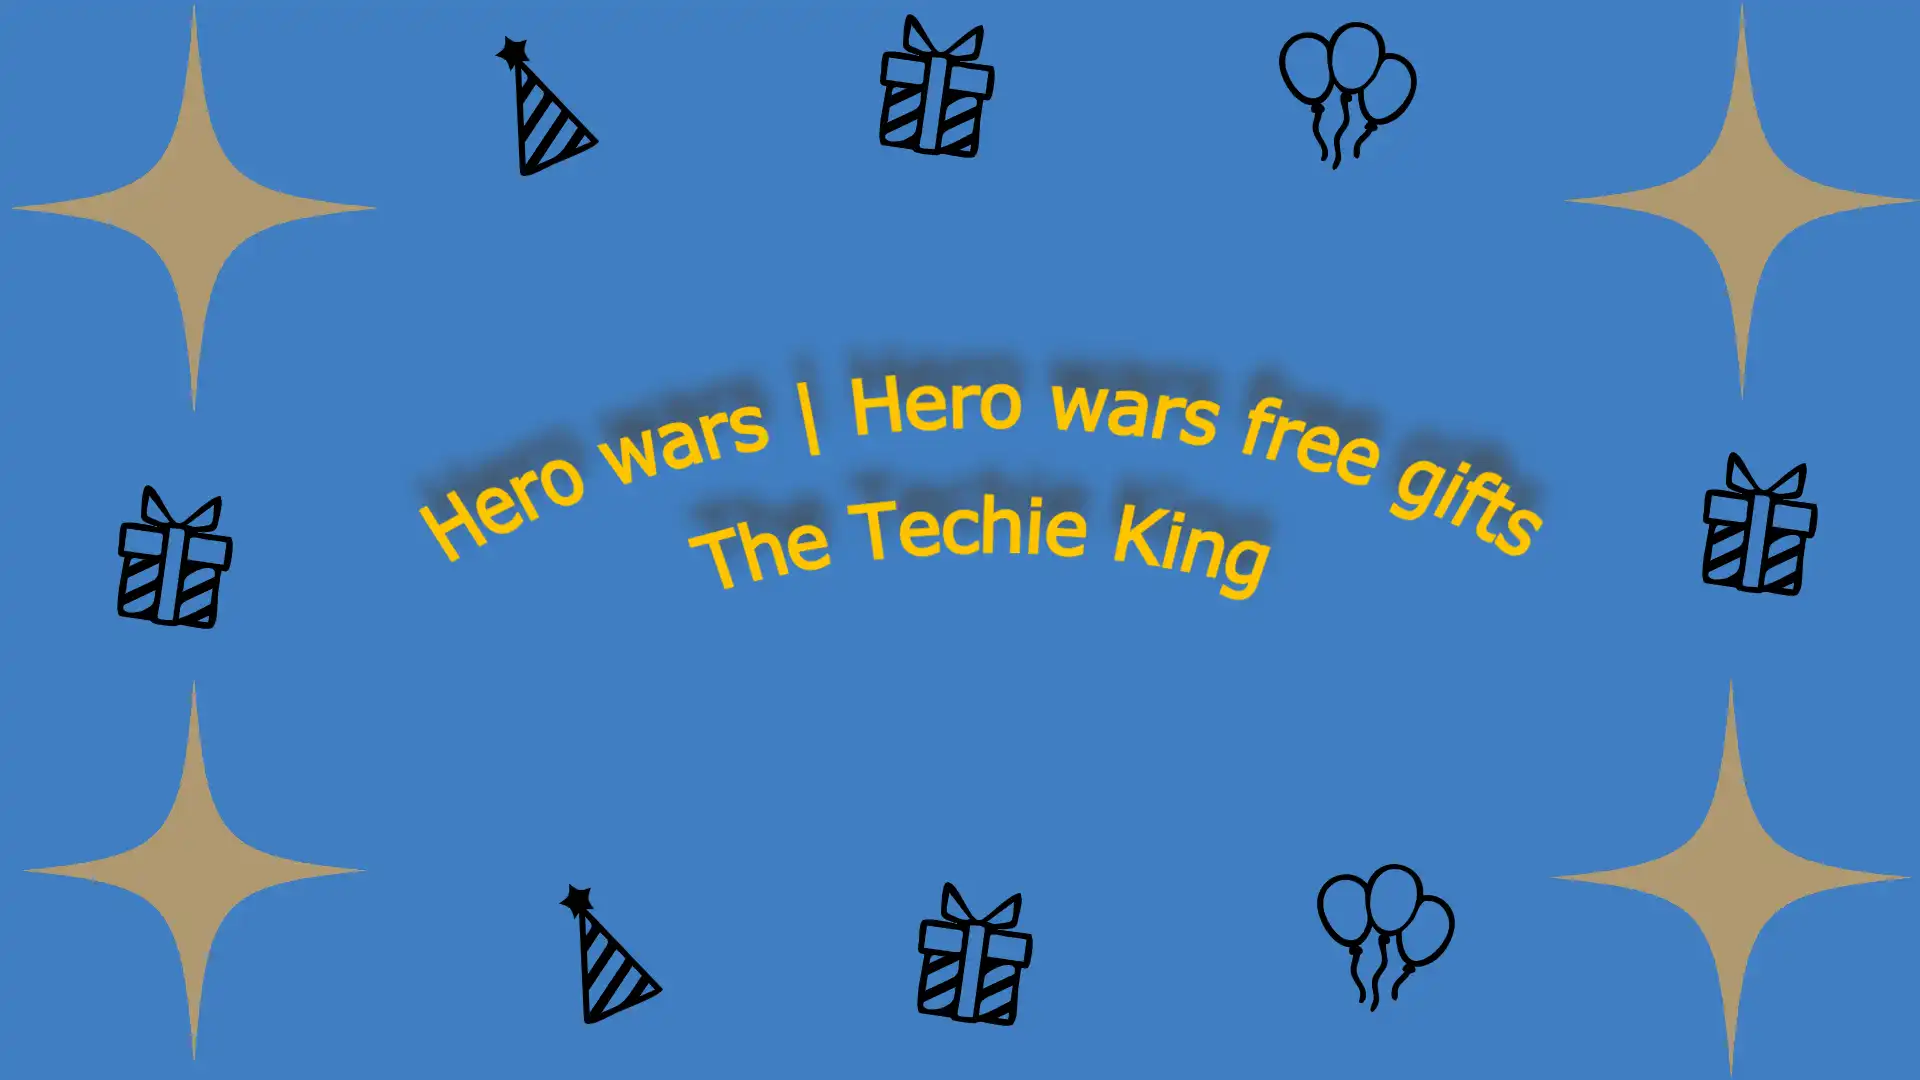 Hero wars free gifts